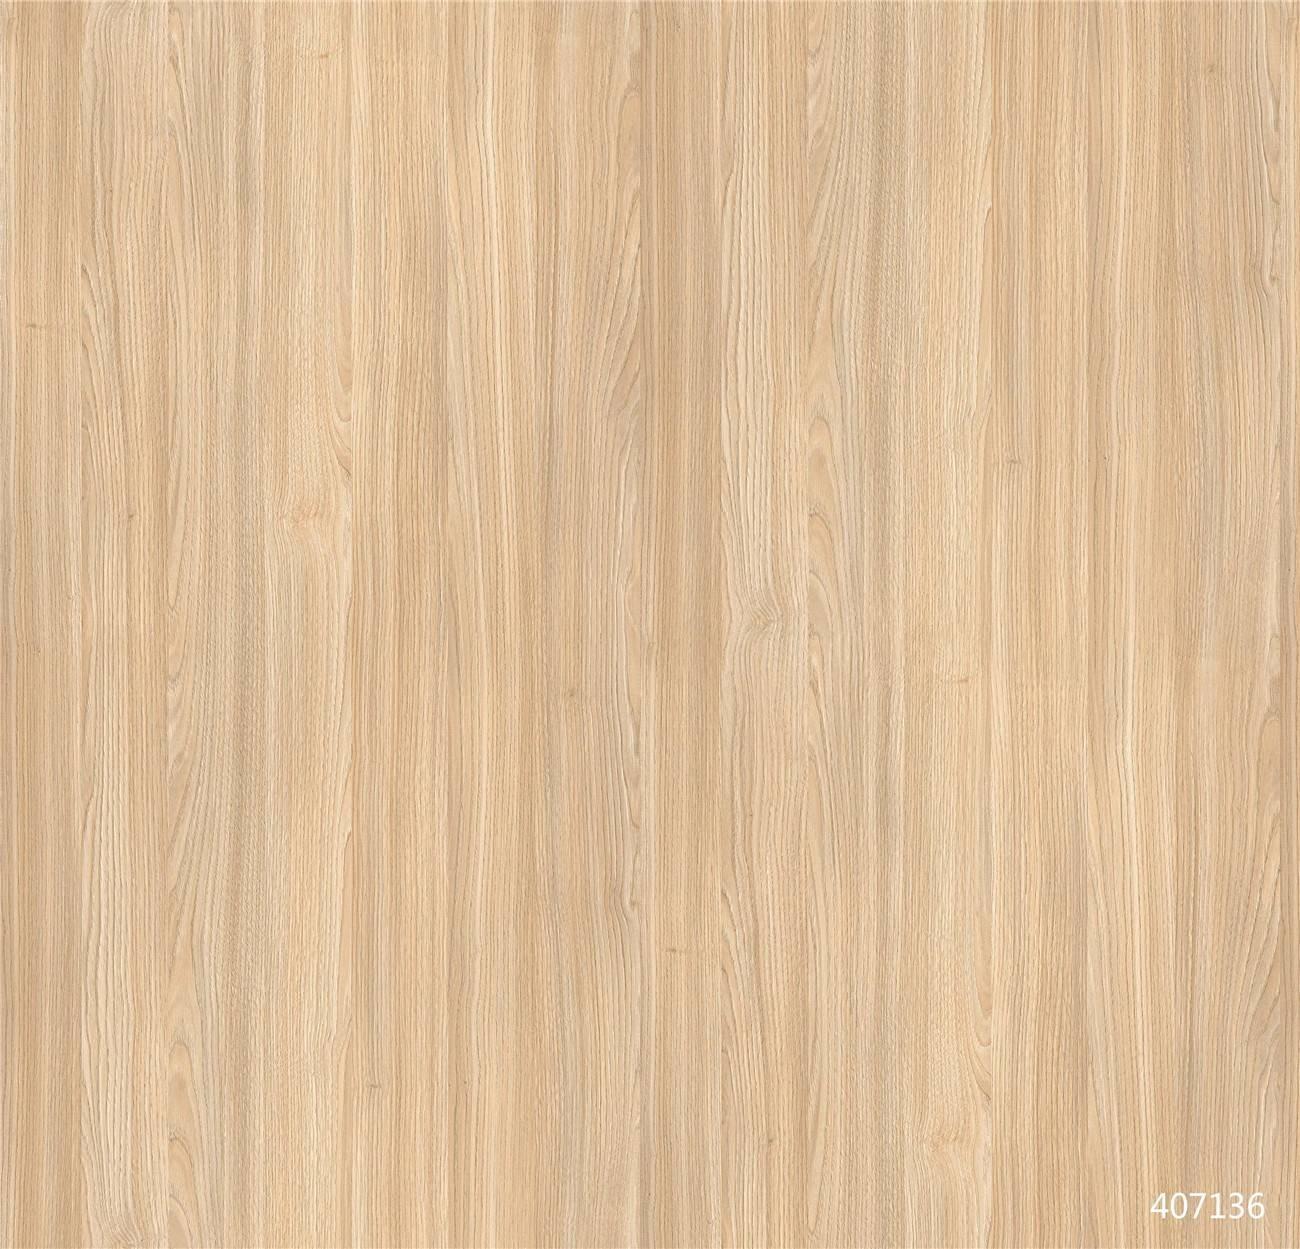 407136  Kastanie Oak wood grain paper looks like real veneer